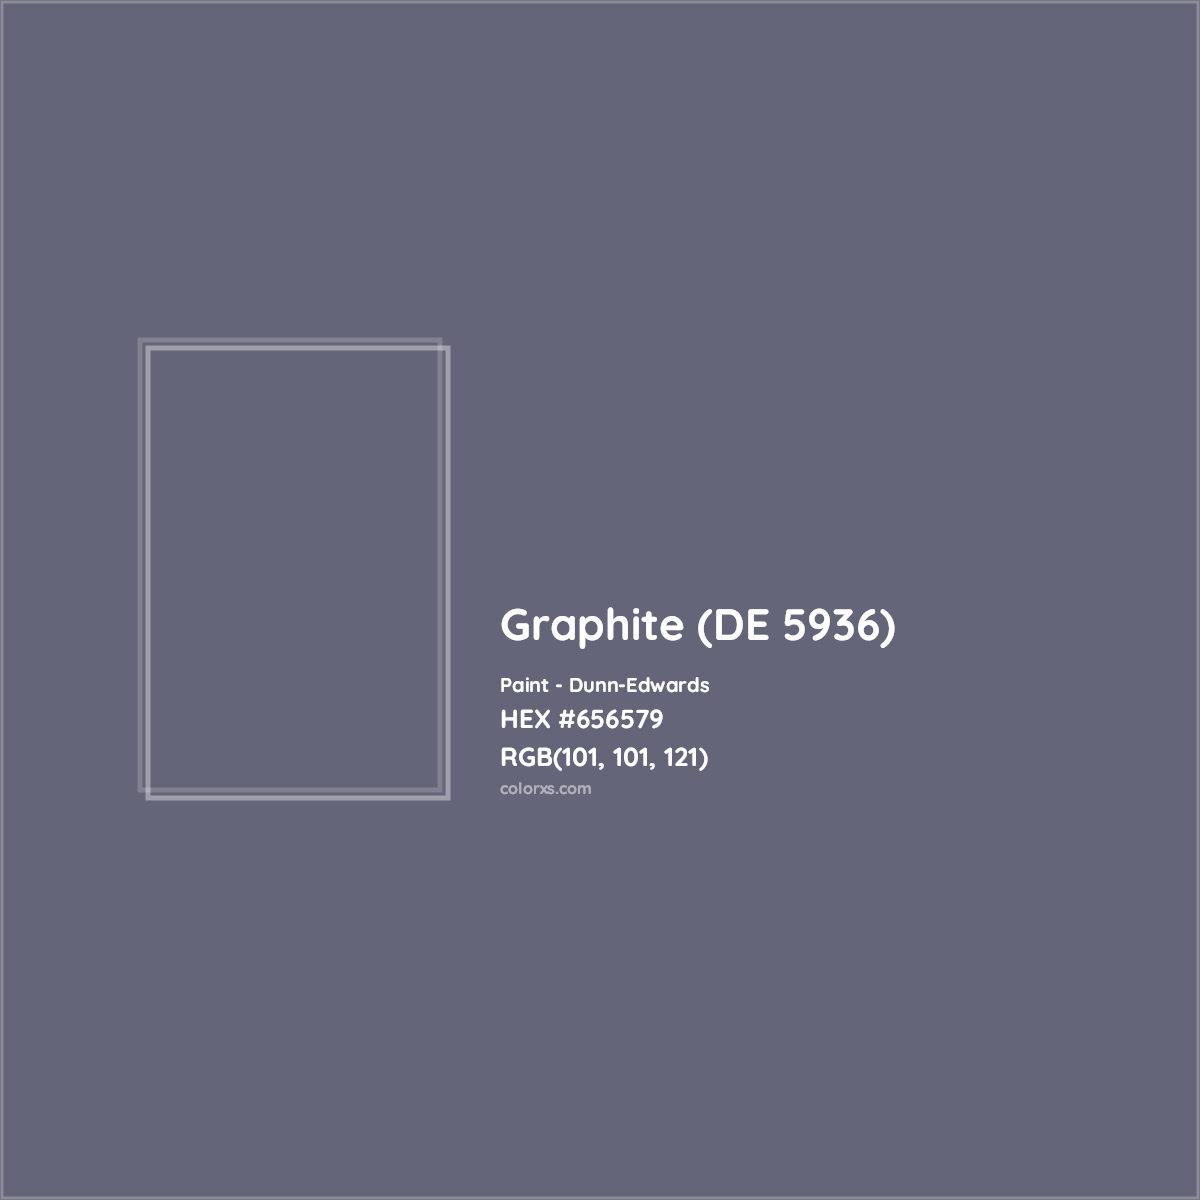 HEX #656579 Graphite (DE 5936) Paint Dunn-Edwards - Color Code